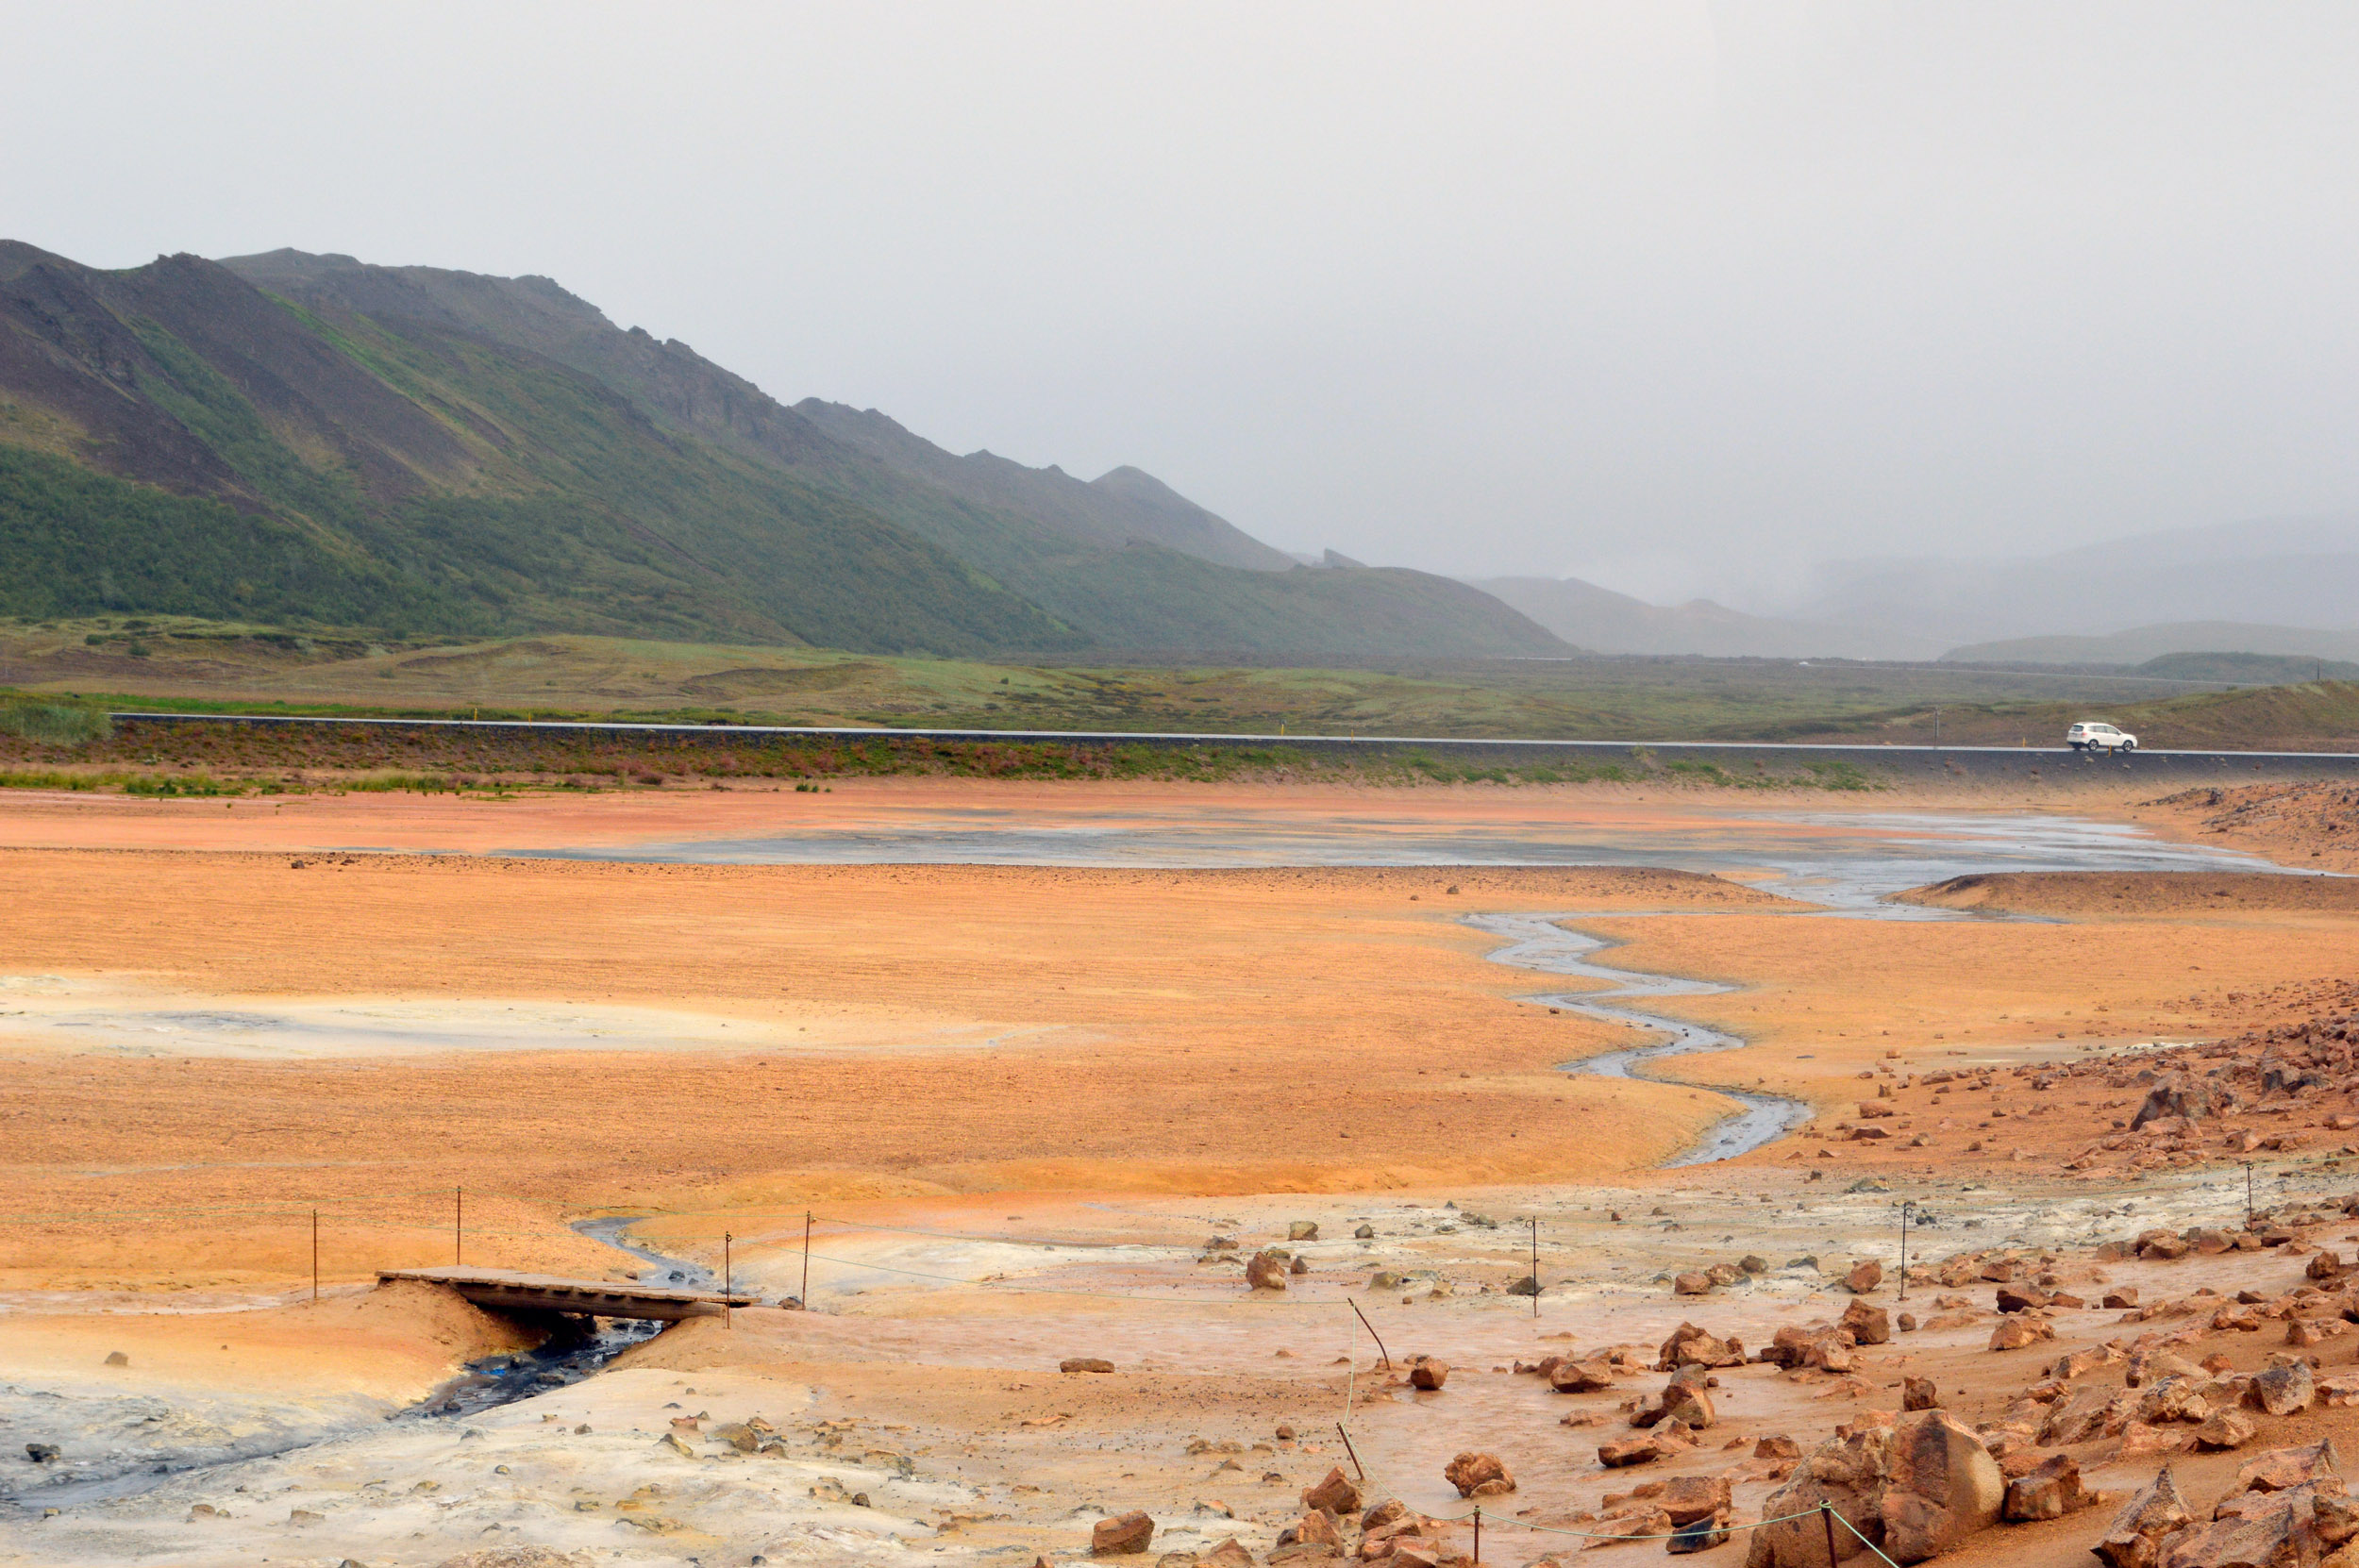 Categorie: Landscape & Nature, Reportage - Photographer: FRANCESCA FERRARI - Location: Islanda